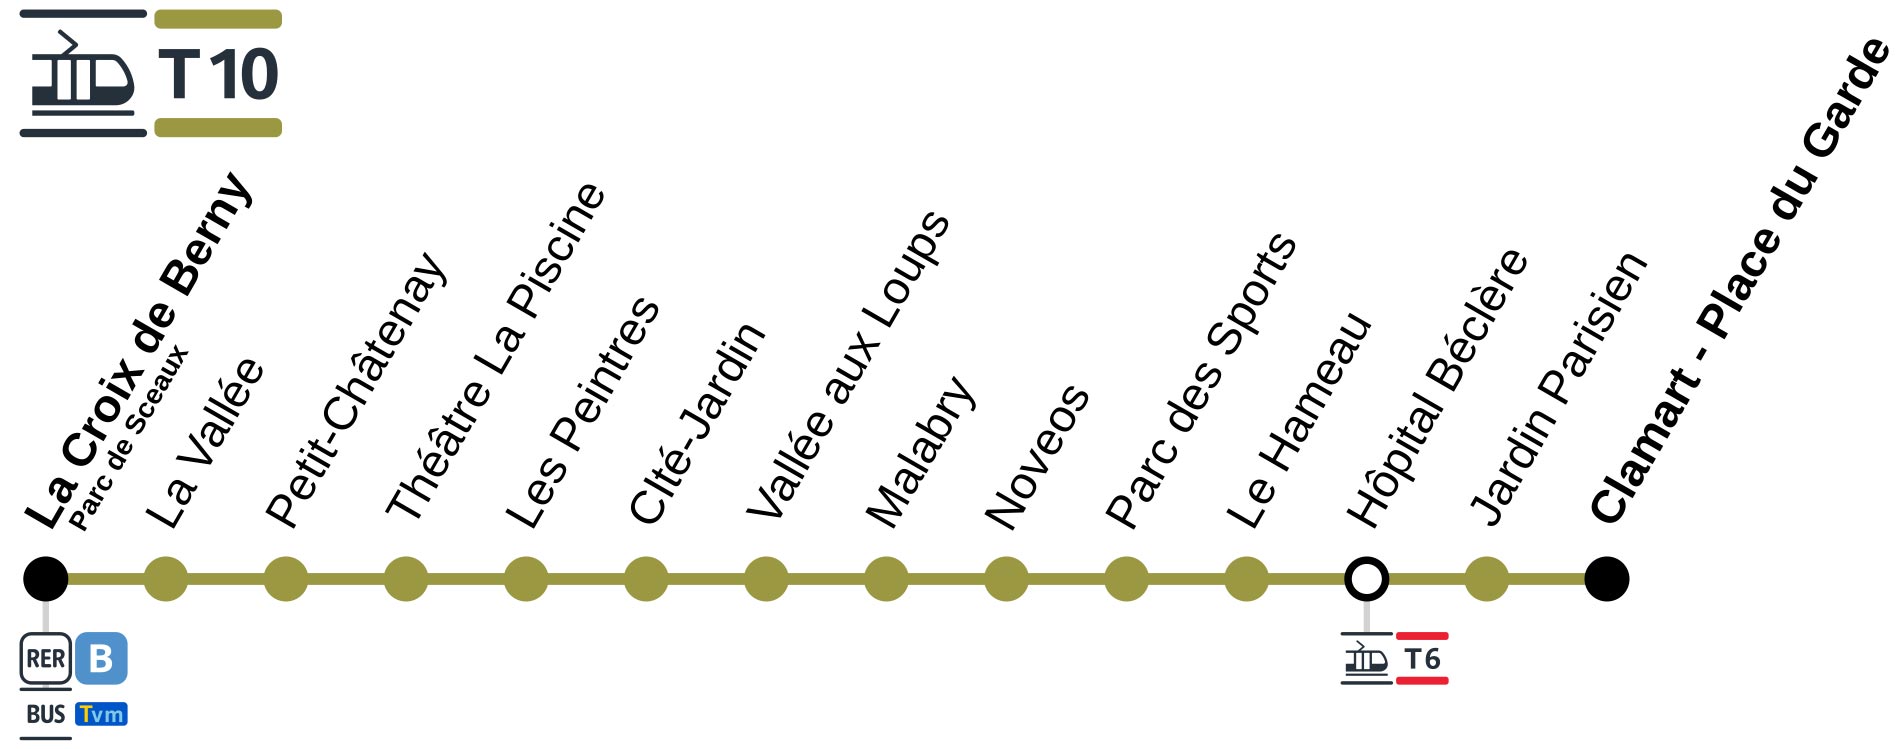 ligne T10 tramway Paris - plan